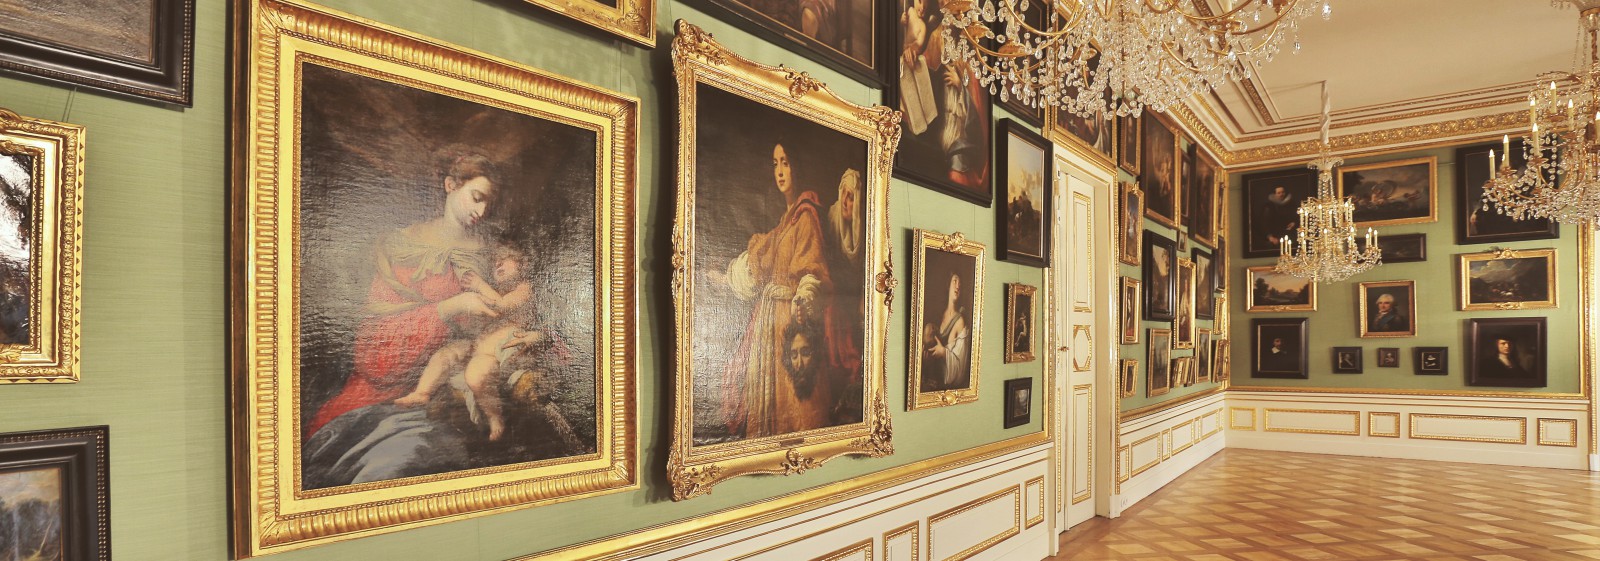 Galeria Obrazów w Pałacu na Wyspie. Obrazy z kolekcji króla Stanisława Augusta w złotych ramach wiszą na jasnozielonej ścianie. Z sufitu zwisają trzy kryształowe żyrandole.